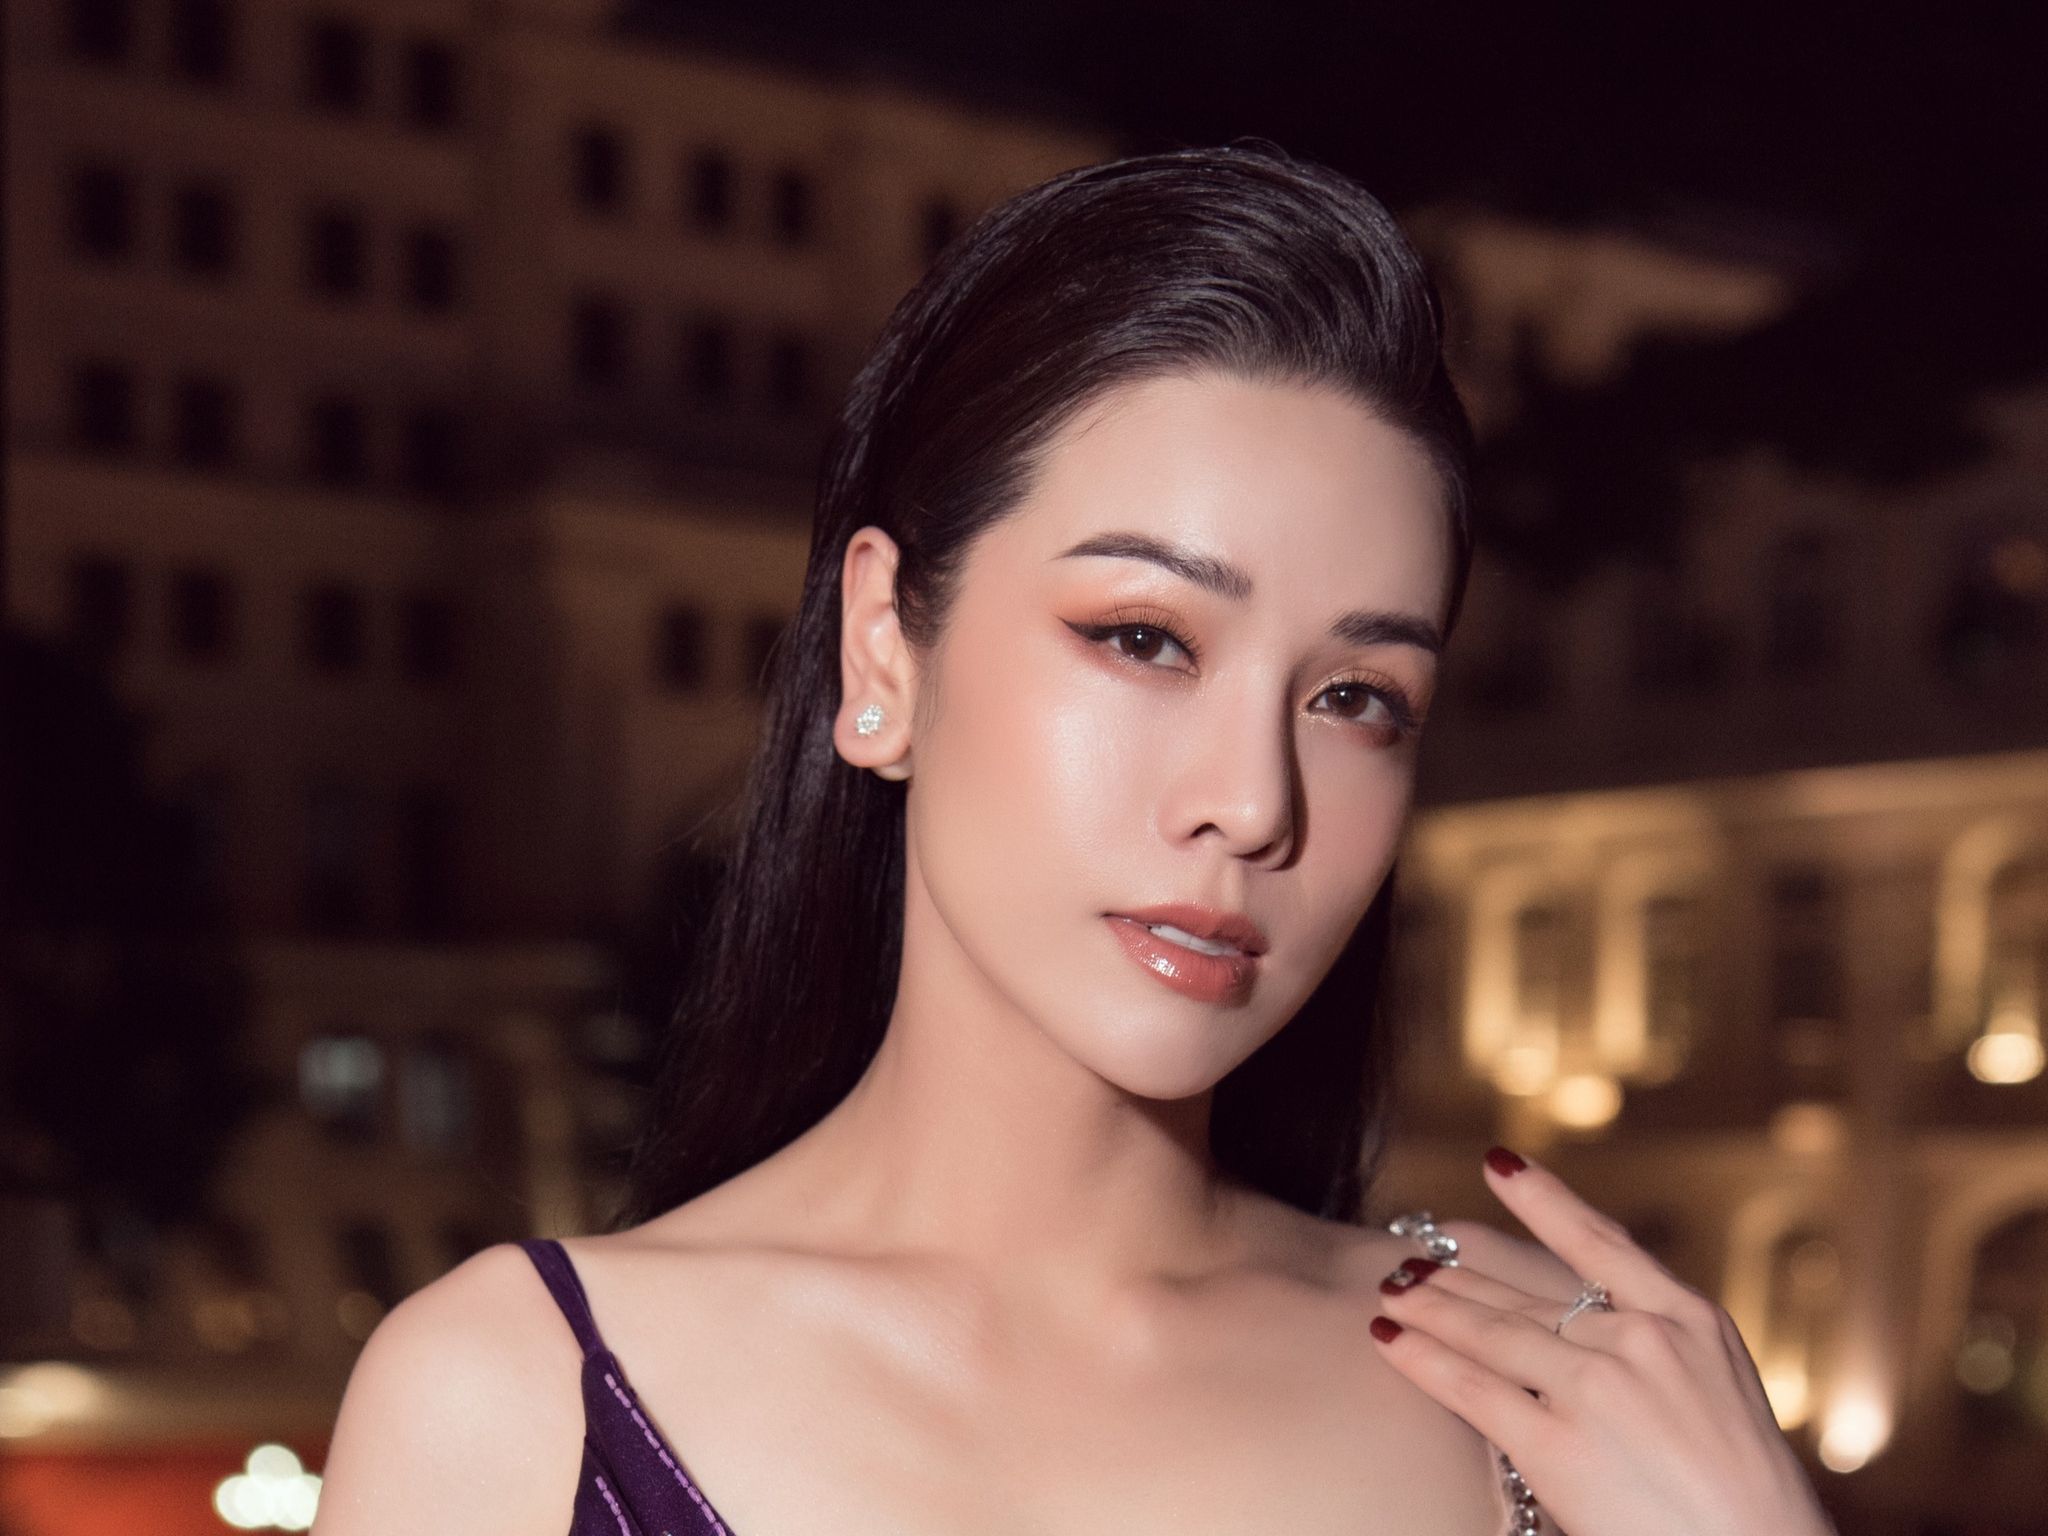 Nhật Kim Anh: Nhật Kim Anh là một trong những nghệ sĩ nổi tiếng và đẳng cấp nhất của showbiz Việt. Hãy cùng ngắm nhìn những hình ảnh sang trọng, quý phái và thật đẹp của cô nàng này, bạn nhé!